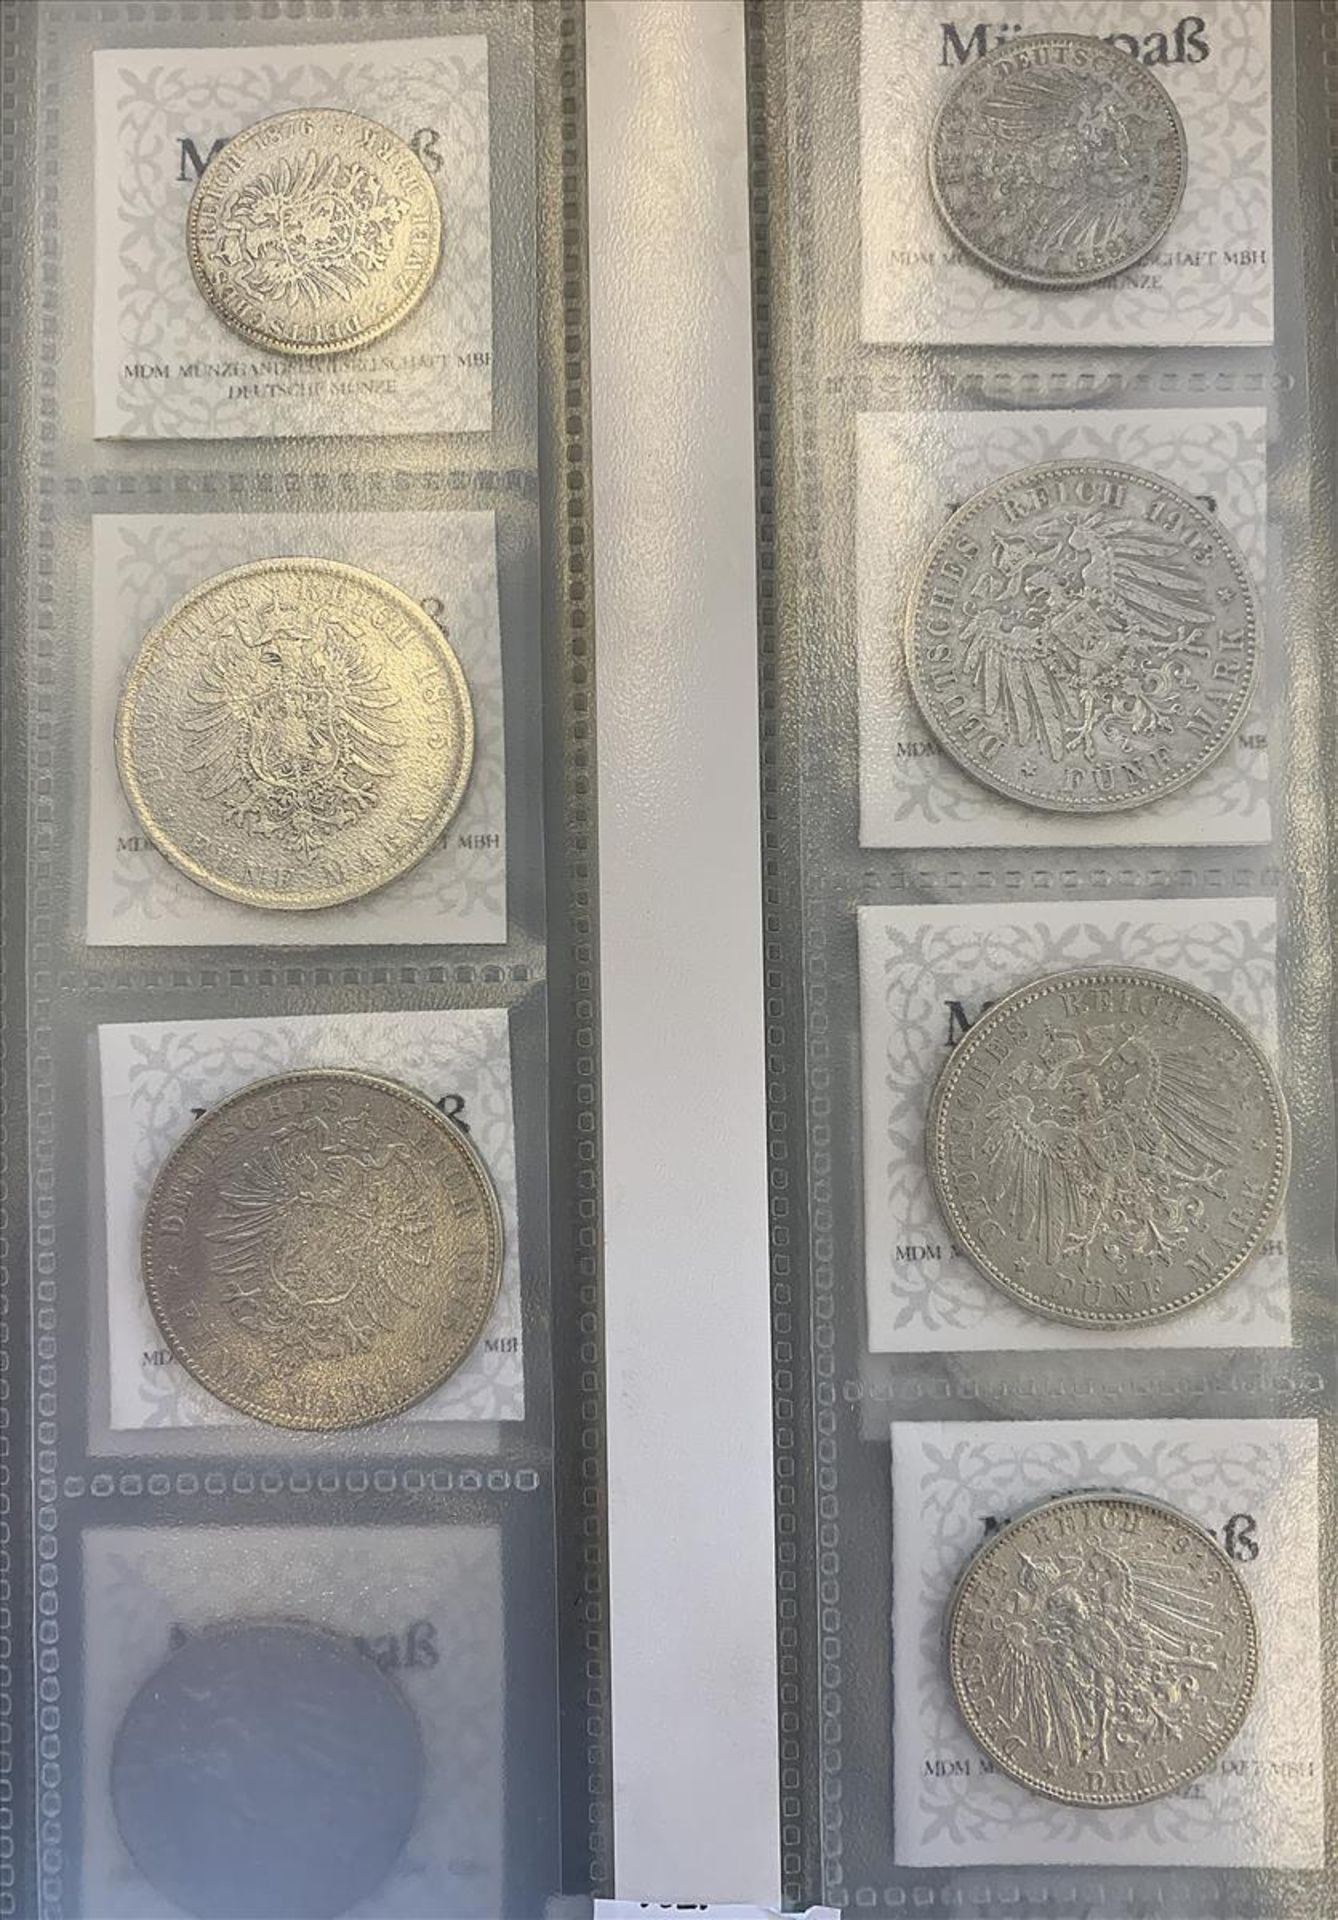 Bayern, Ludwig II. und Otto, Sammlung von sieben Silbermünzen:2 Mark 1876 und 1899, 3 Mark 1912